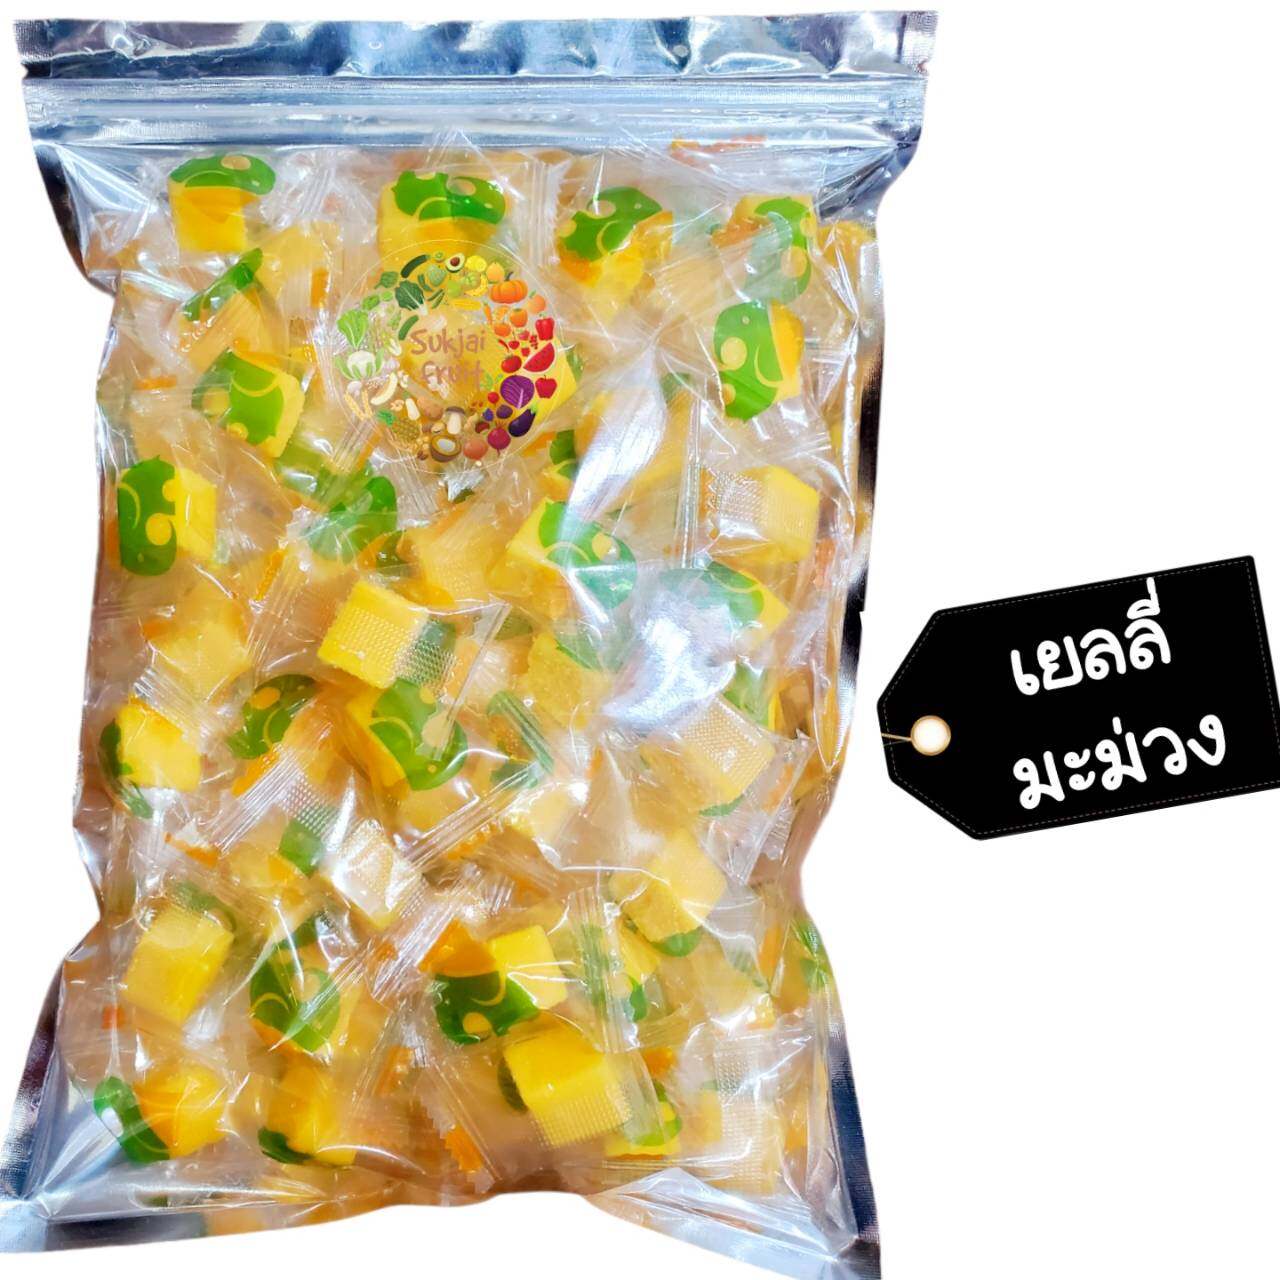 เยลลี่ มะม่วง น้ำดอกไม้ 80 กรัม - Mango jelly 80 g  - Dried fruit ผลไม้ อบแห้ง ขนมไทย ขนม OTOP เยลลี่มะม่วง ผลไม้อบแห้ง บ๊วย ผลไม้อบแห้ง